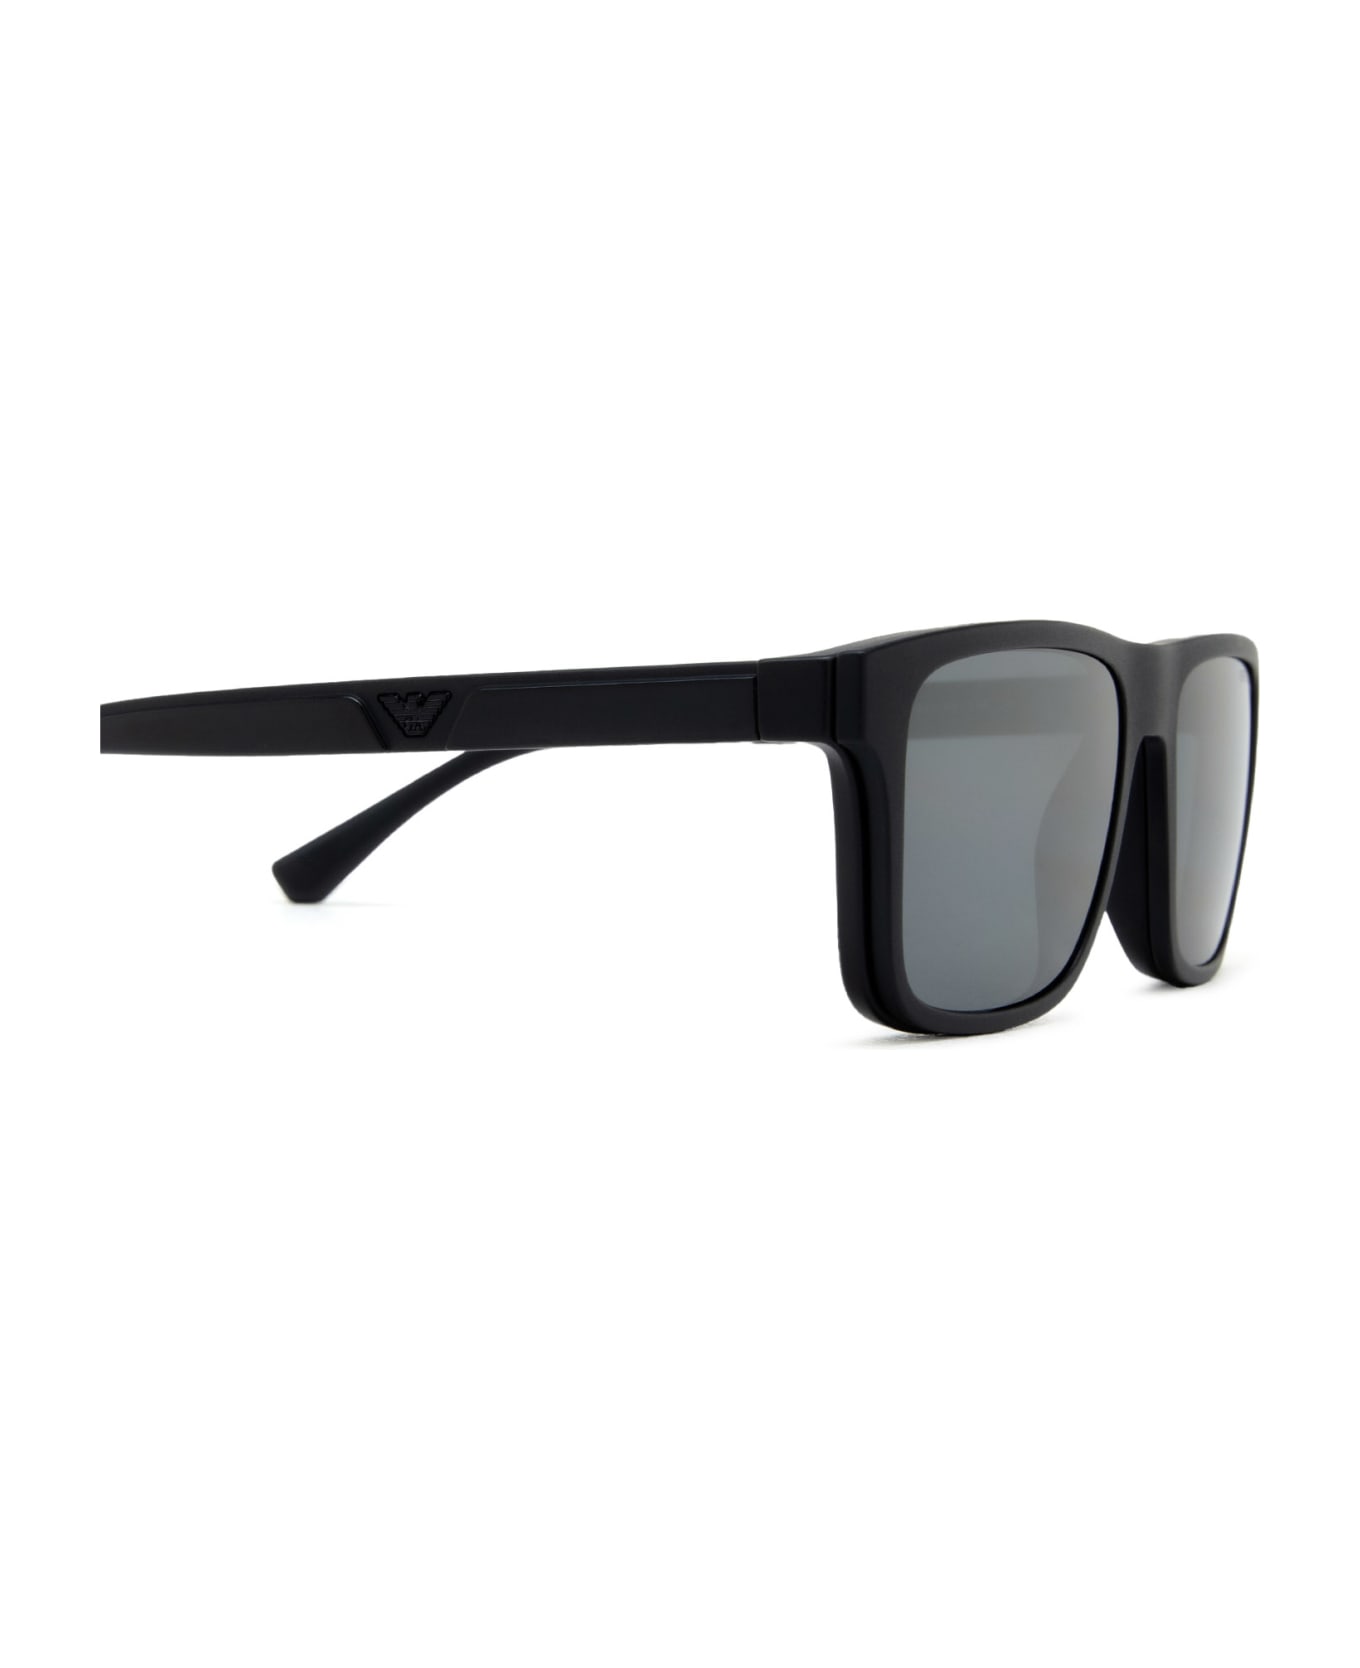 Emporio Armani Ea4115 Matte Black Glasses - Matte Black